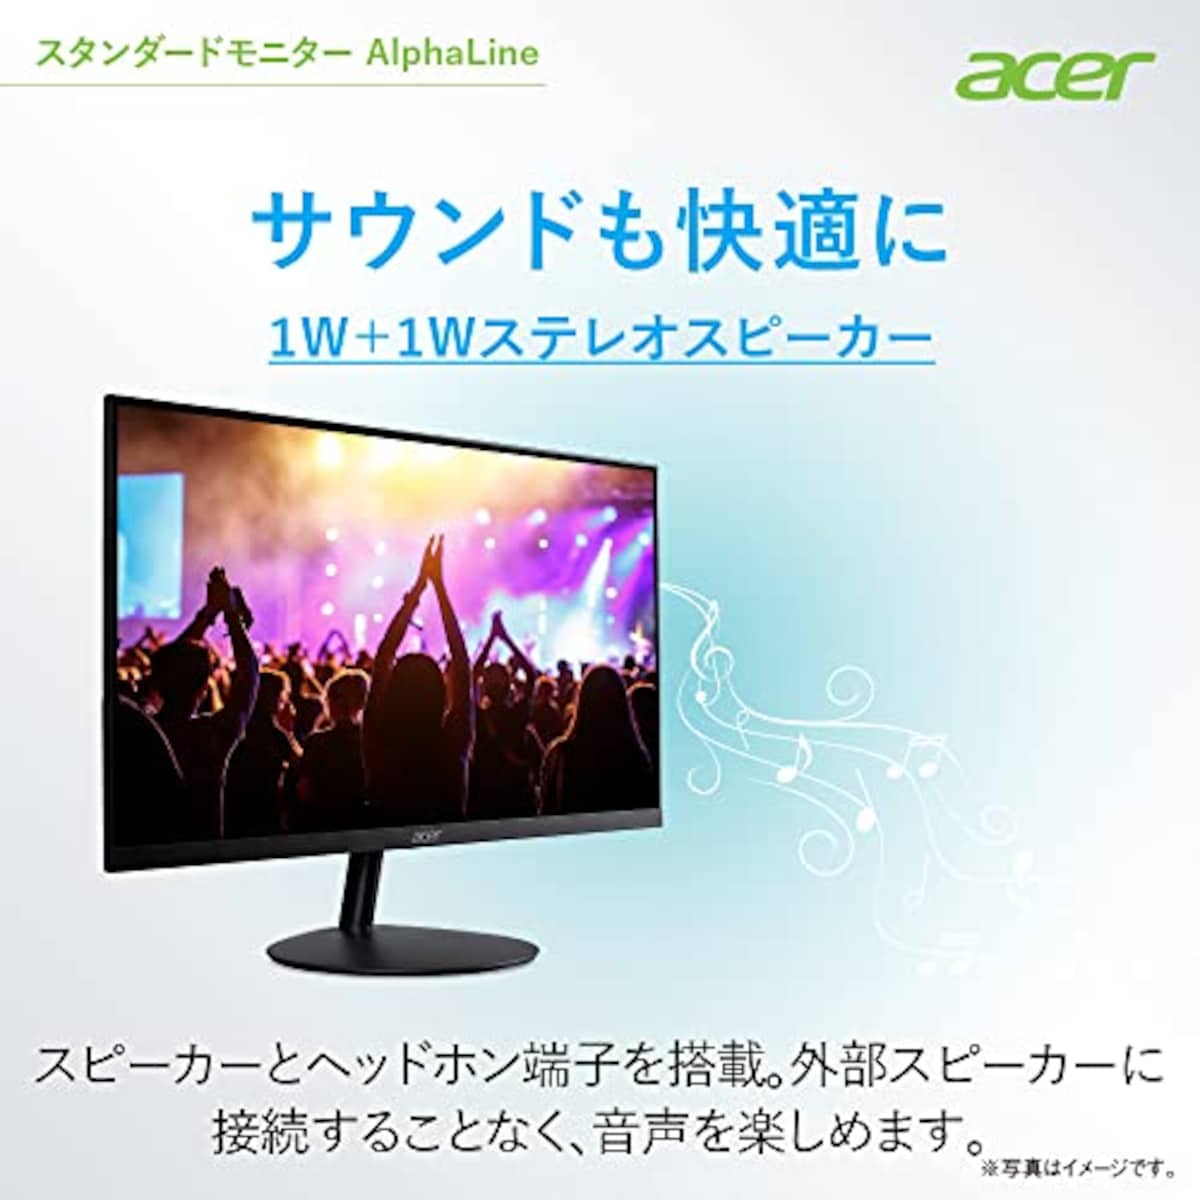  日本エイサー 【Amazon.co.jp限定】 Acer スタンダードモニター 27インチ IPS 非光沢 フルHD 100Hz 1ms HDMI ミニD-Sub15 VESAマウント対応 スピーカー内蔵 ヘッドホン端子 AMD FreeSync SA272Ebmix画像6 